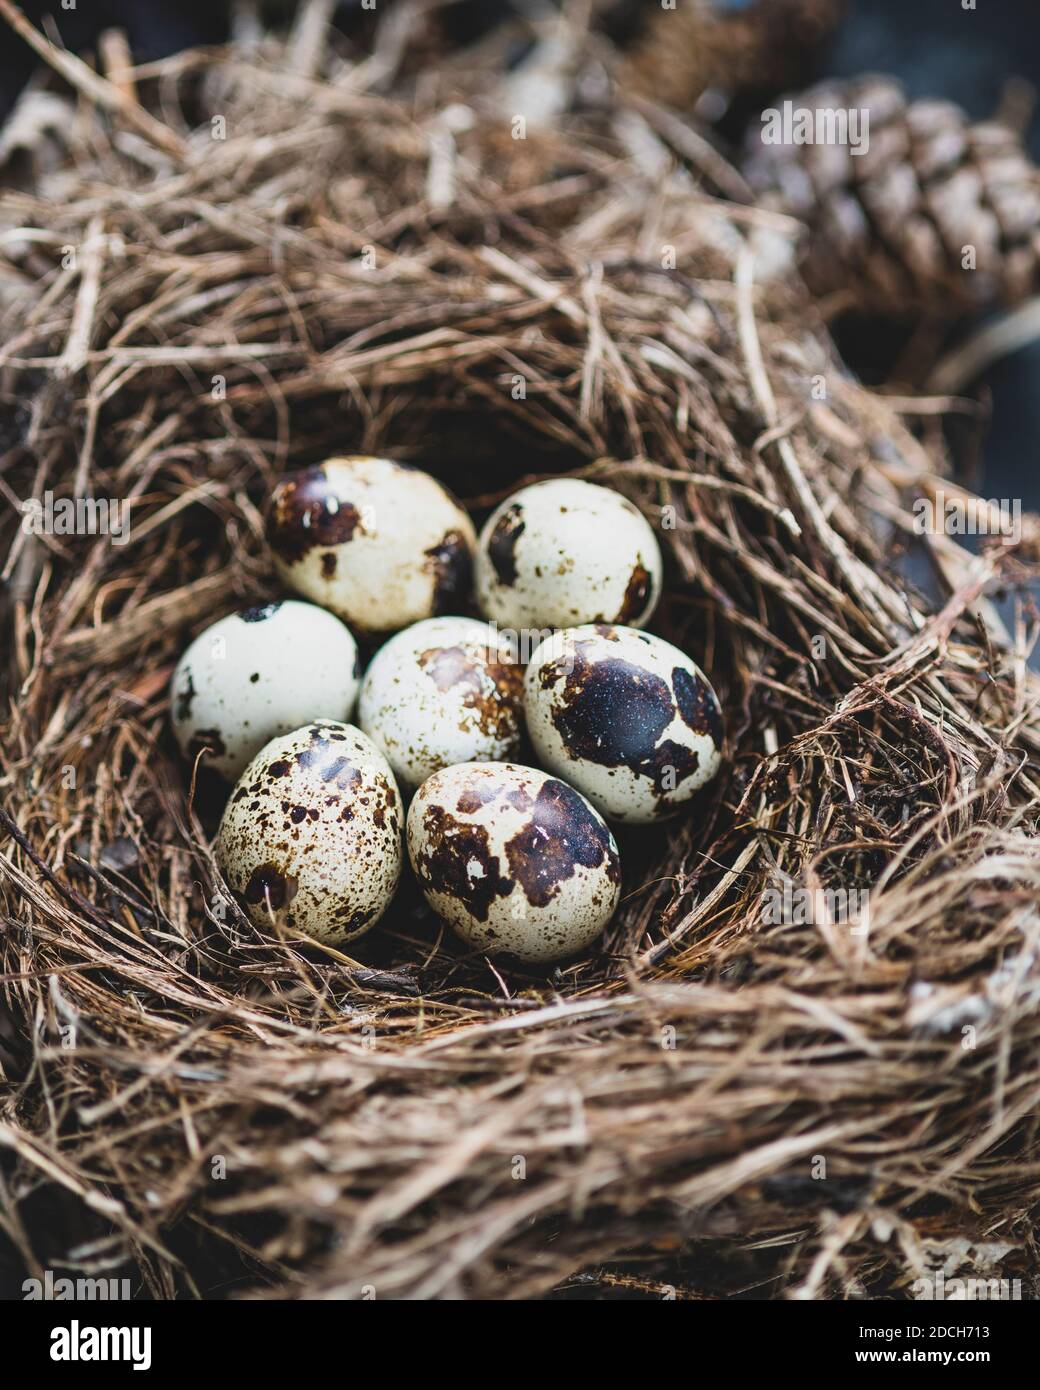 Hier von einer Wachtel in einem Nest, Wachteleier im Nest,Farbfoto von Wachteleiern im Nest,Wachtelei, Nest mit Wachtel Eiern, Nest mit Eiern Stockfoto